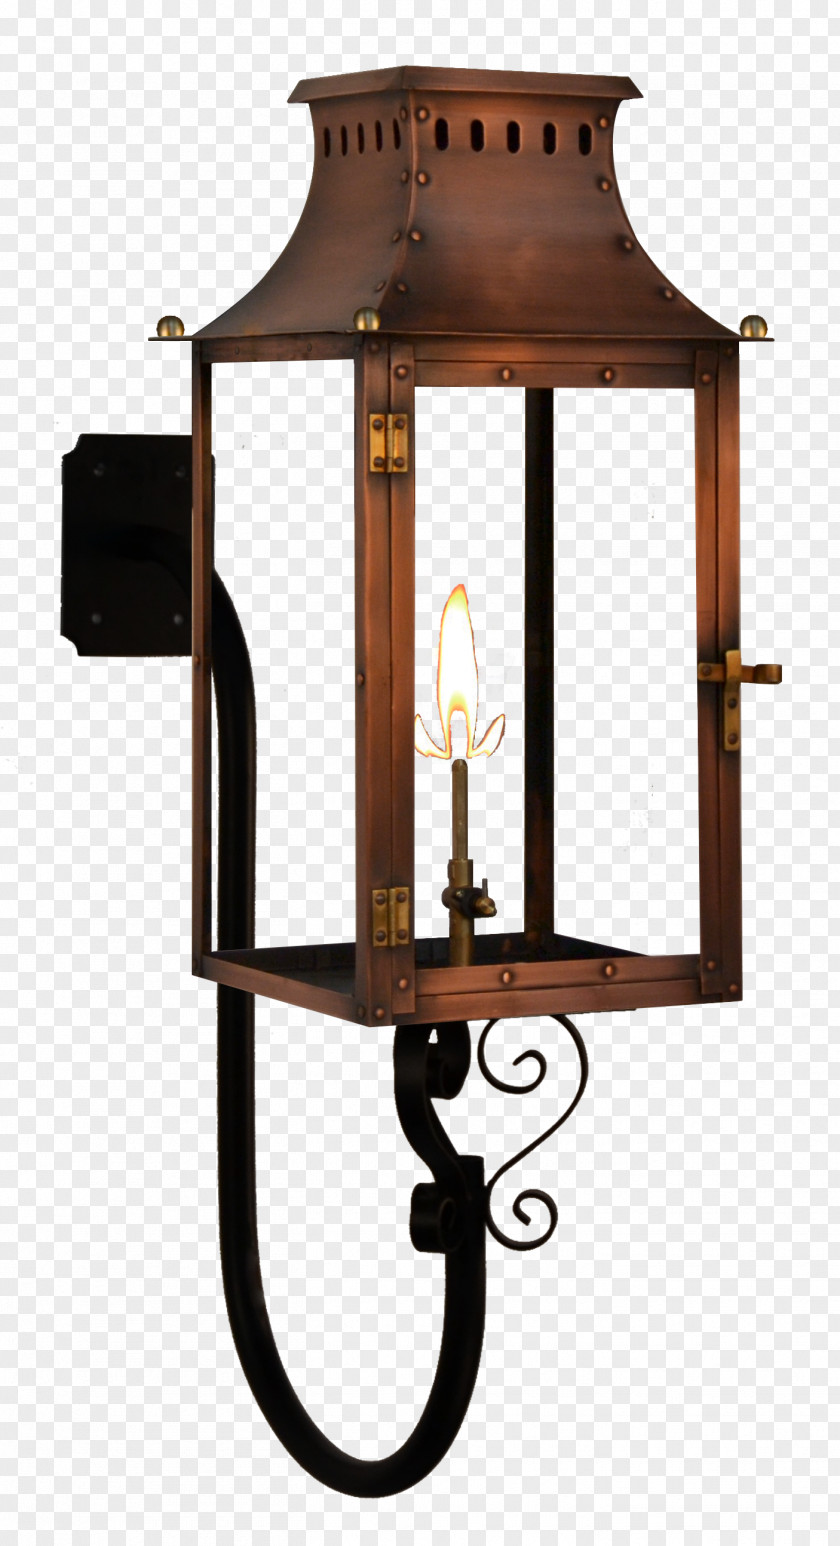 Antique Carriage Lantern Lamp Gulf Coast Lanterns Street Gas Lighting PNG